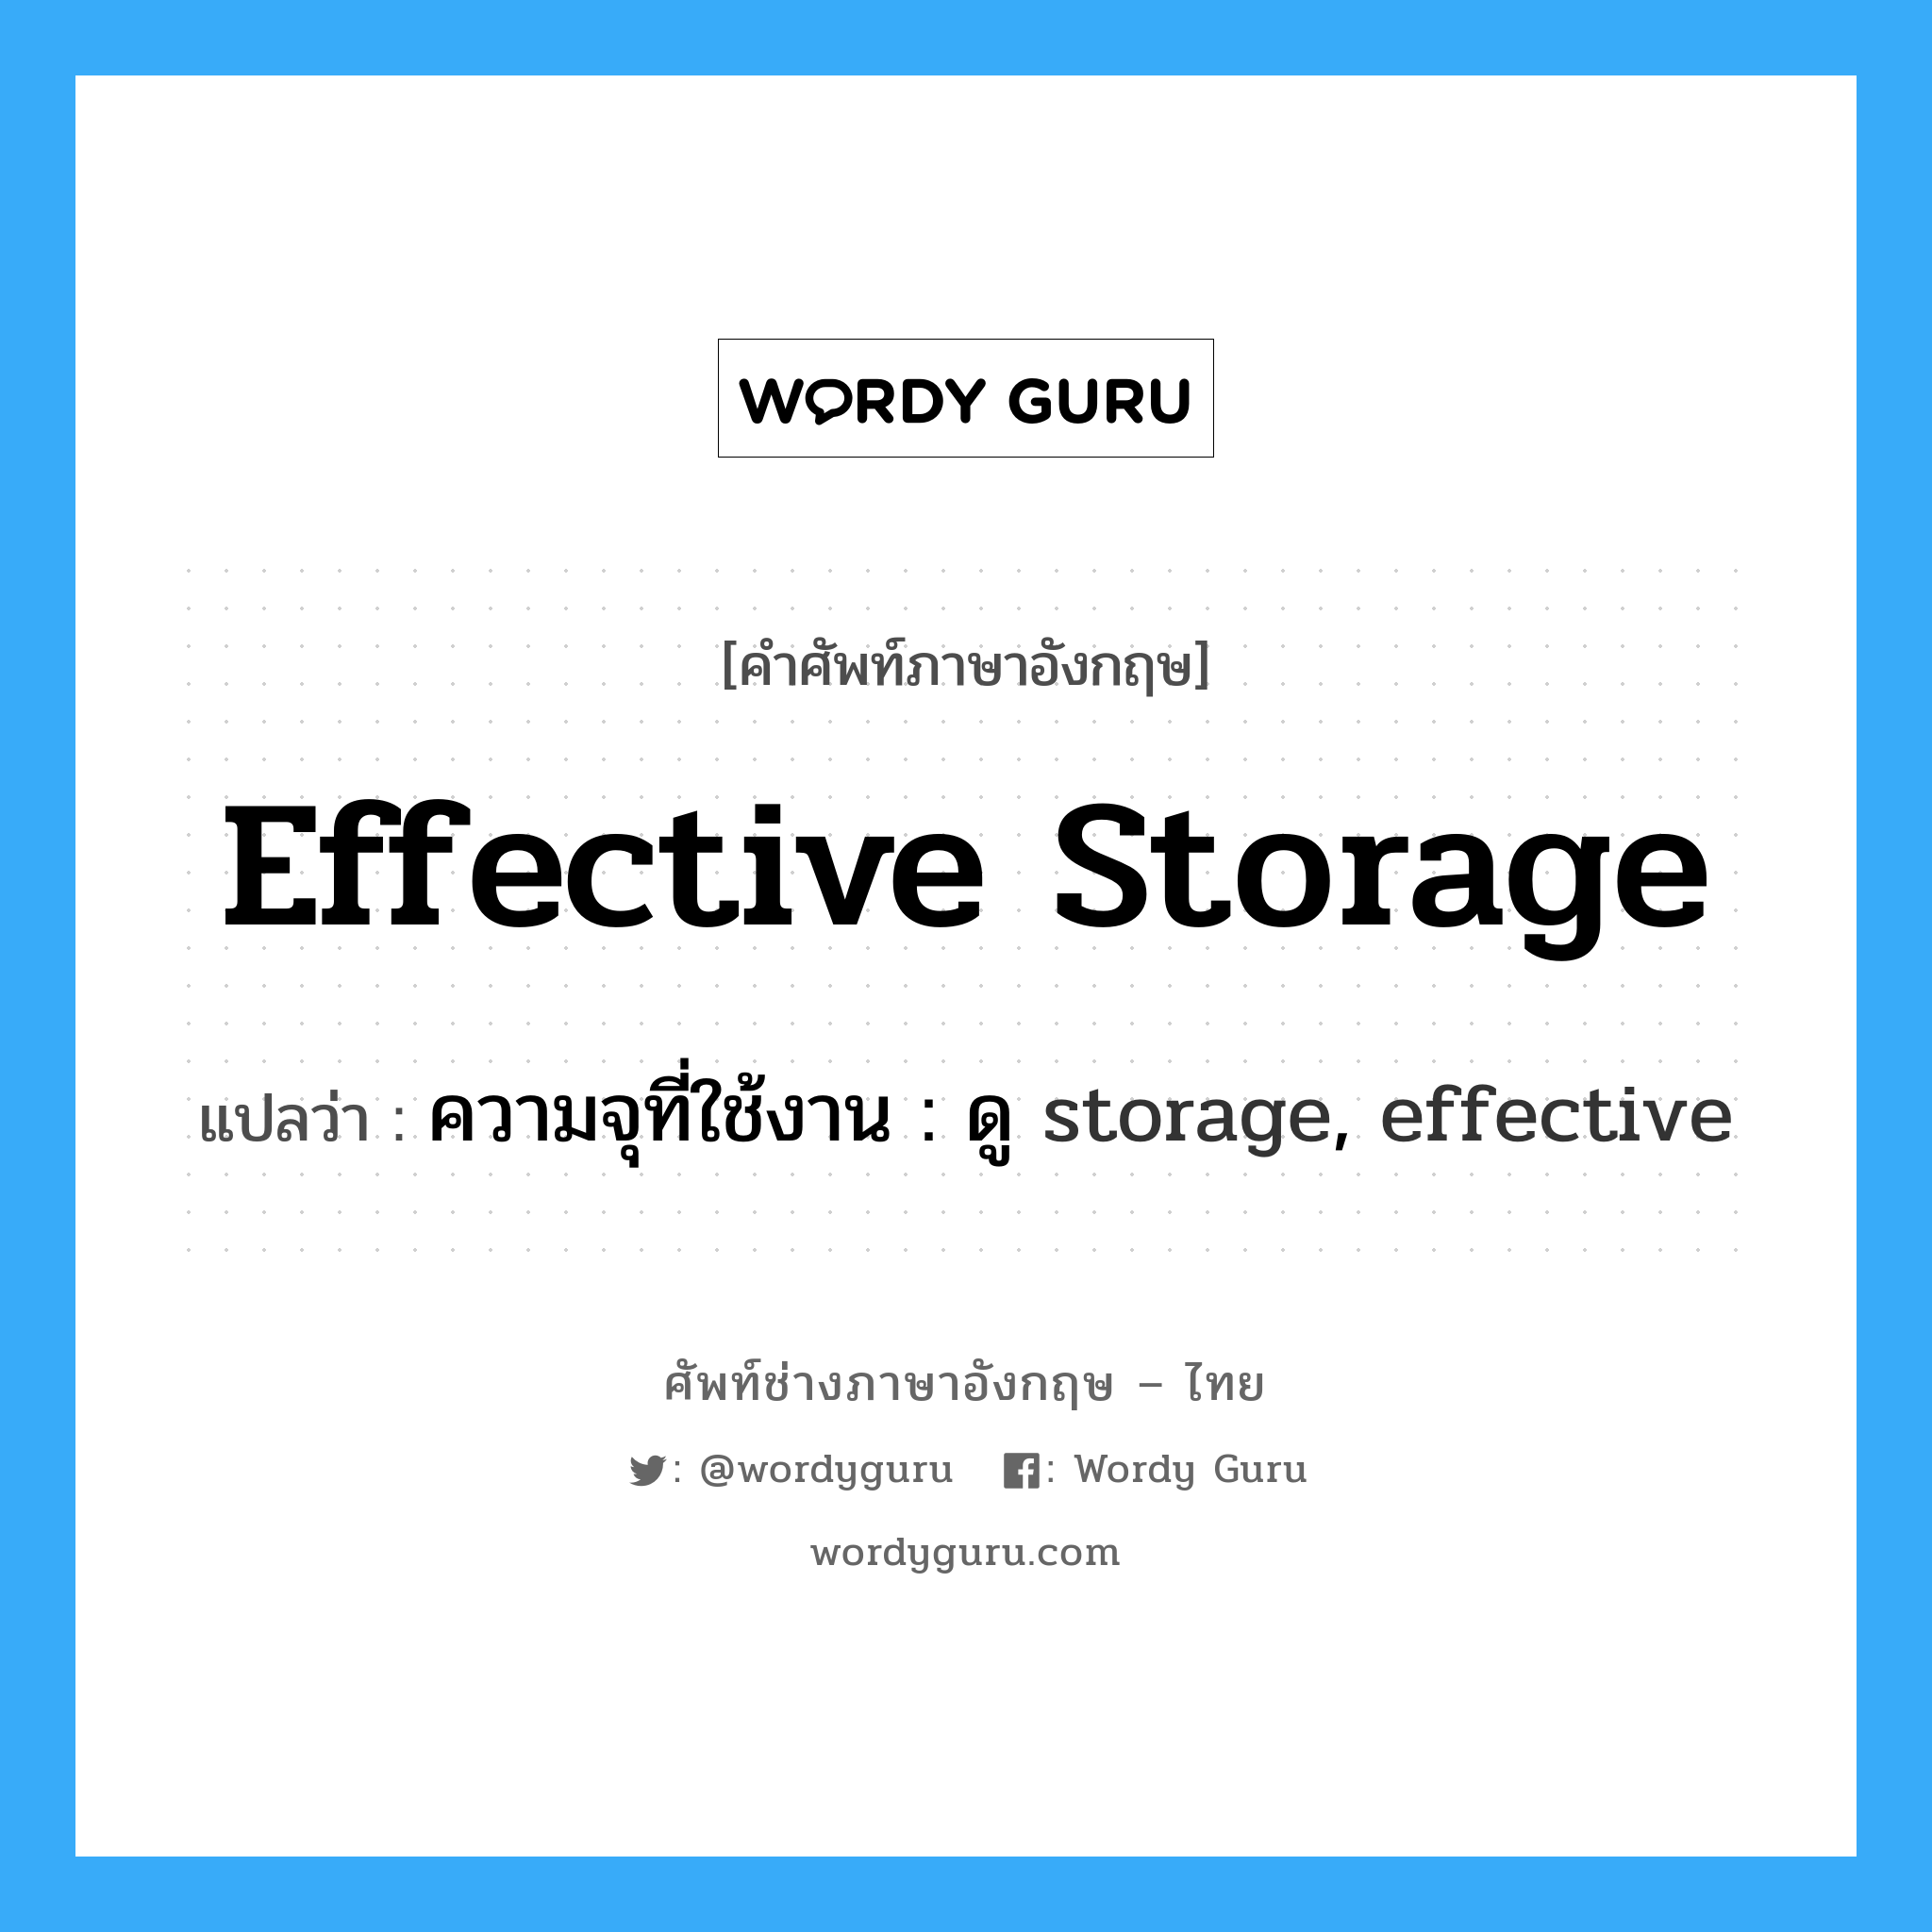 ความจุที่ใช้งาน : ดู storage, effective ภาษาอังกฤษ?, คำศัพท์ช่างภาษาอังกฤษ - ไทย ความจุที่ใช้งาน : ดู storage, effective คำศัพท์ภาษาอังกฤษ ความจุที่ใช้งาน : ดู storage, effective แปลว่า effective storage